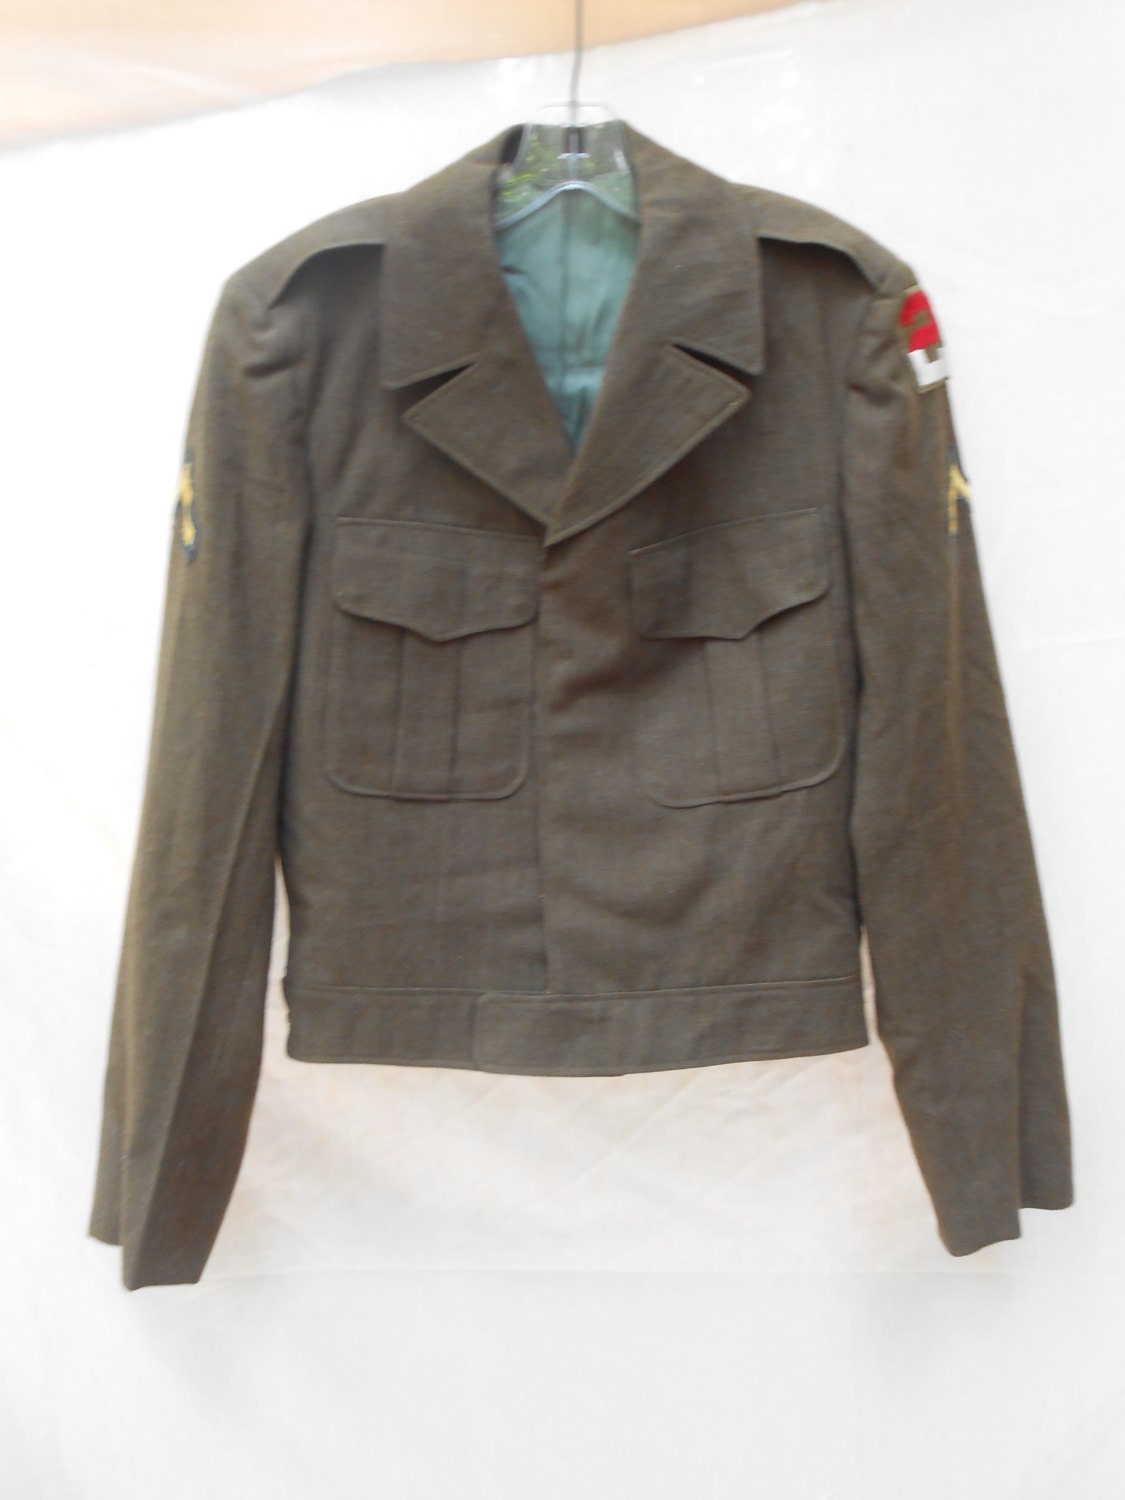 Authentic 1955 WWII Eisenhower military jacket // 36 large